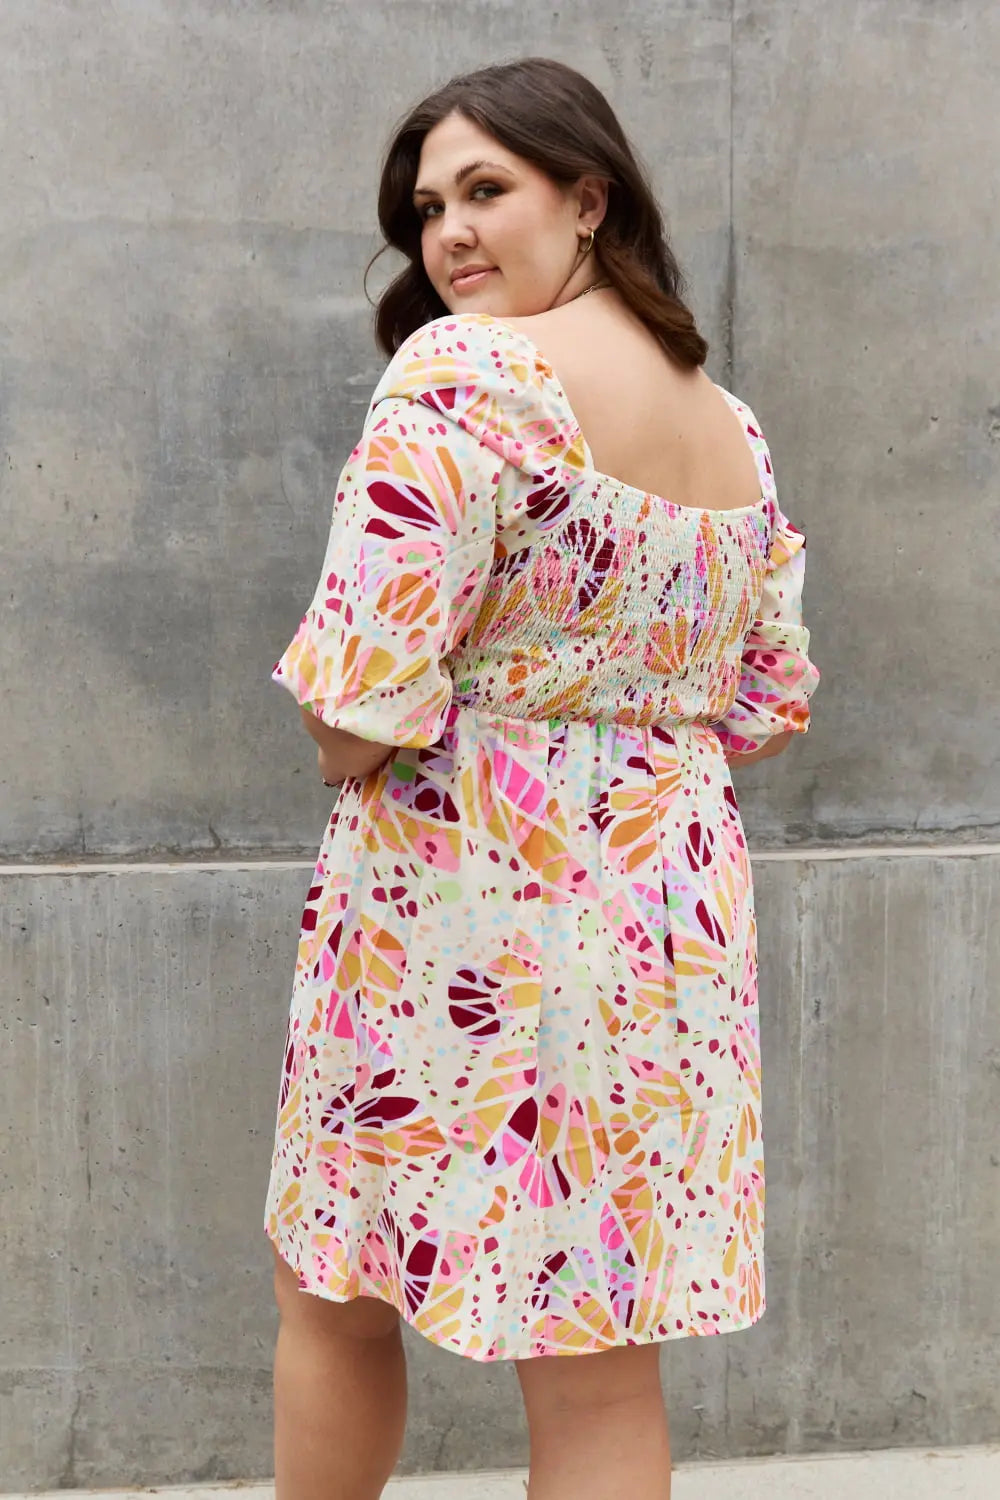 ODDI Full Size Floral Print Mini Dress - Hot Trends